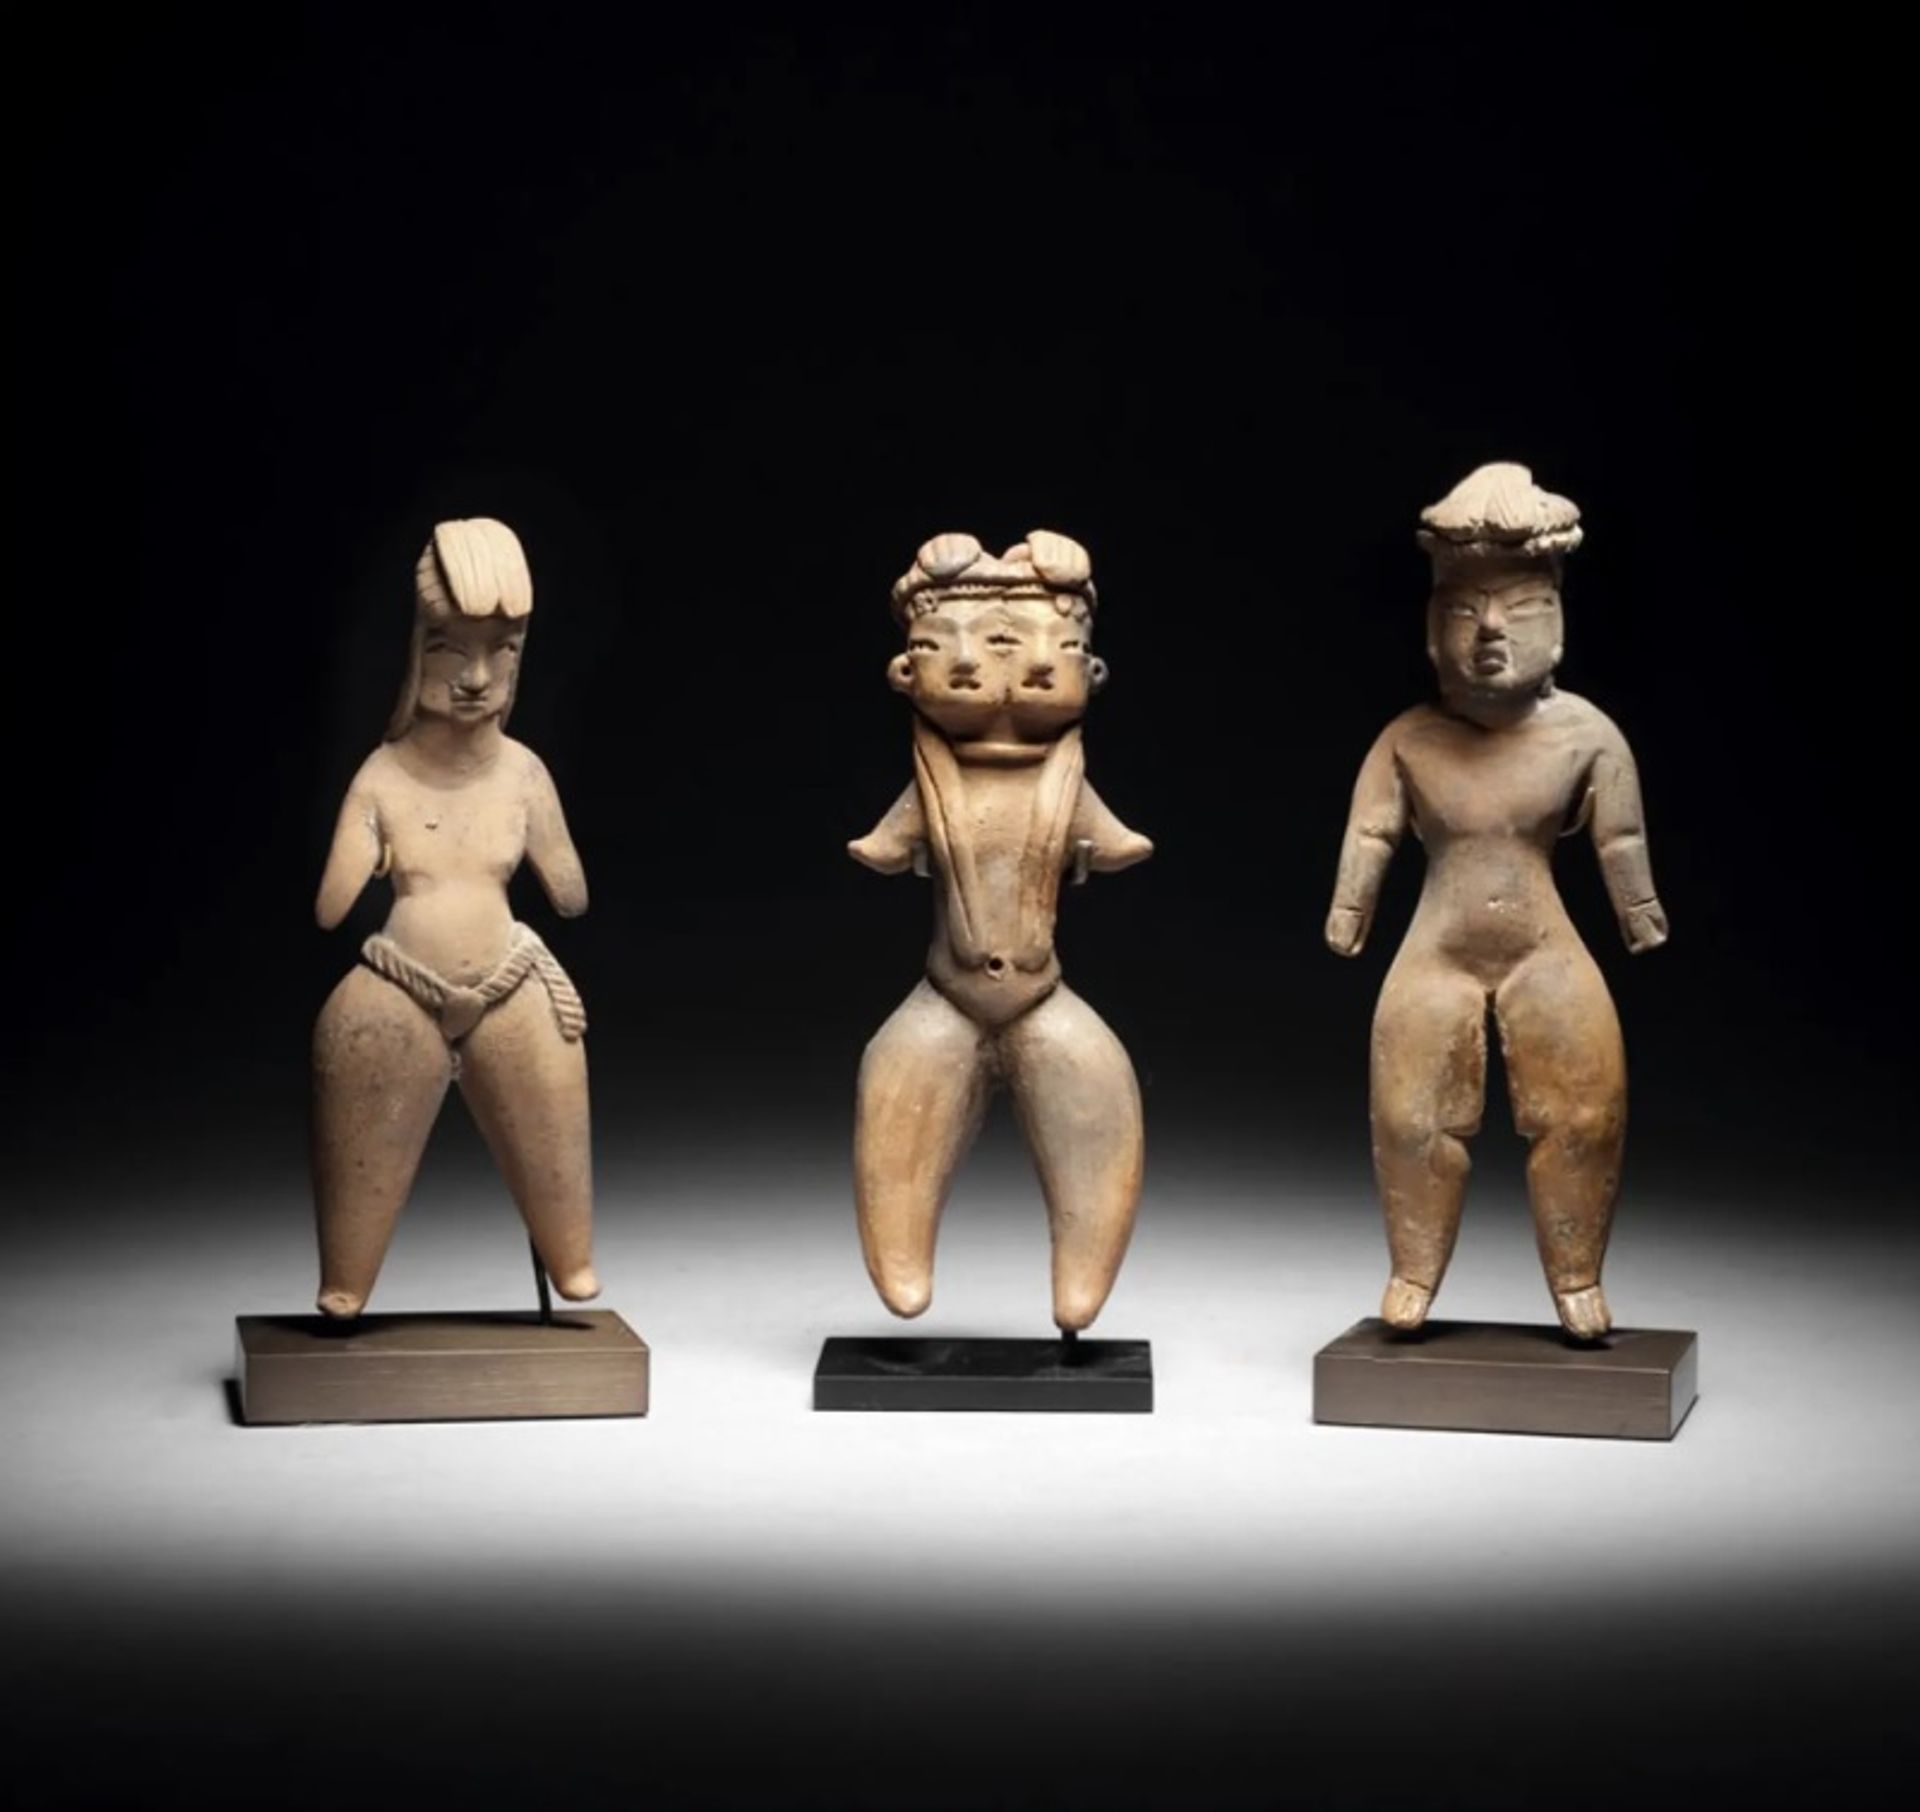 שלישיית פסלים פרה-קולומביאניים מצולמים בקטלוג המכירה של,Binoche et de Giqueello ב-22 בנובמבר בפריז.

Binoche et de Giquello